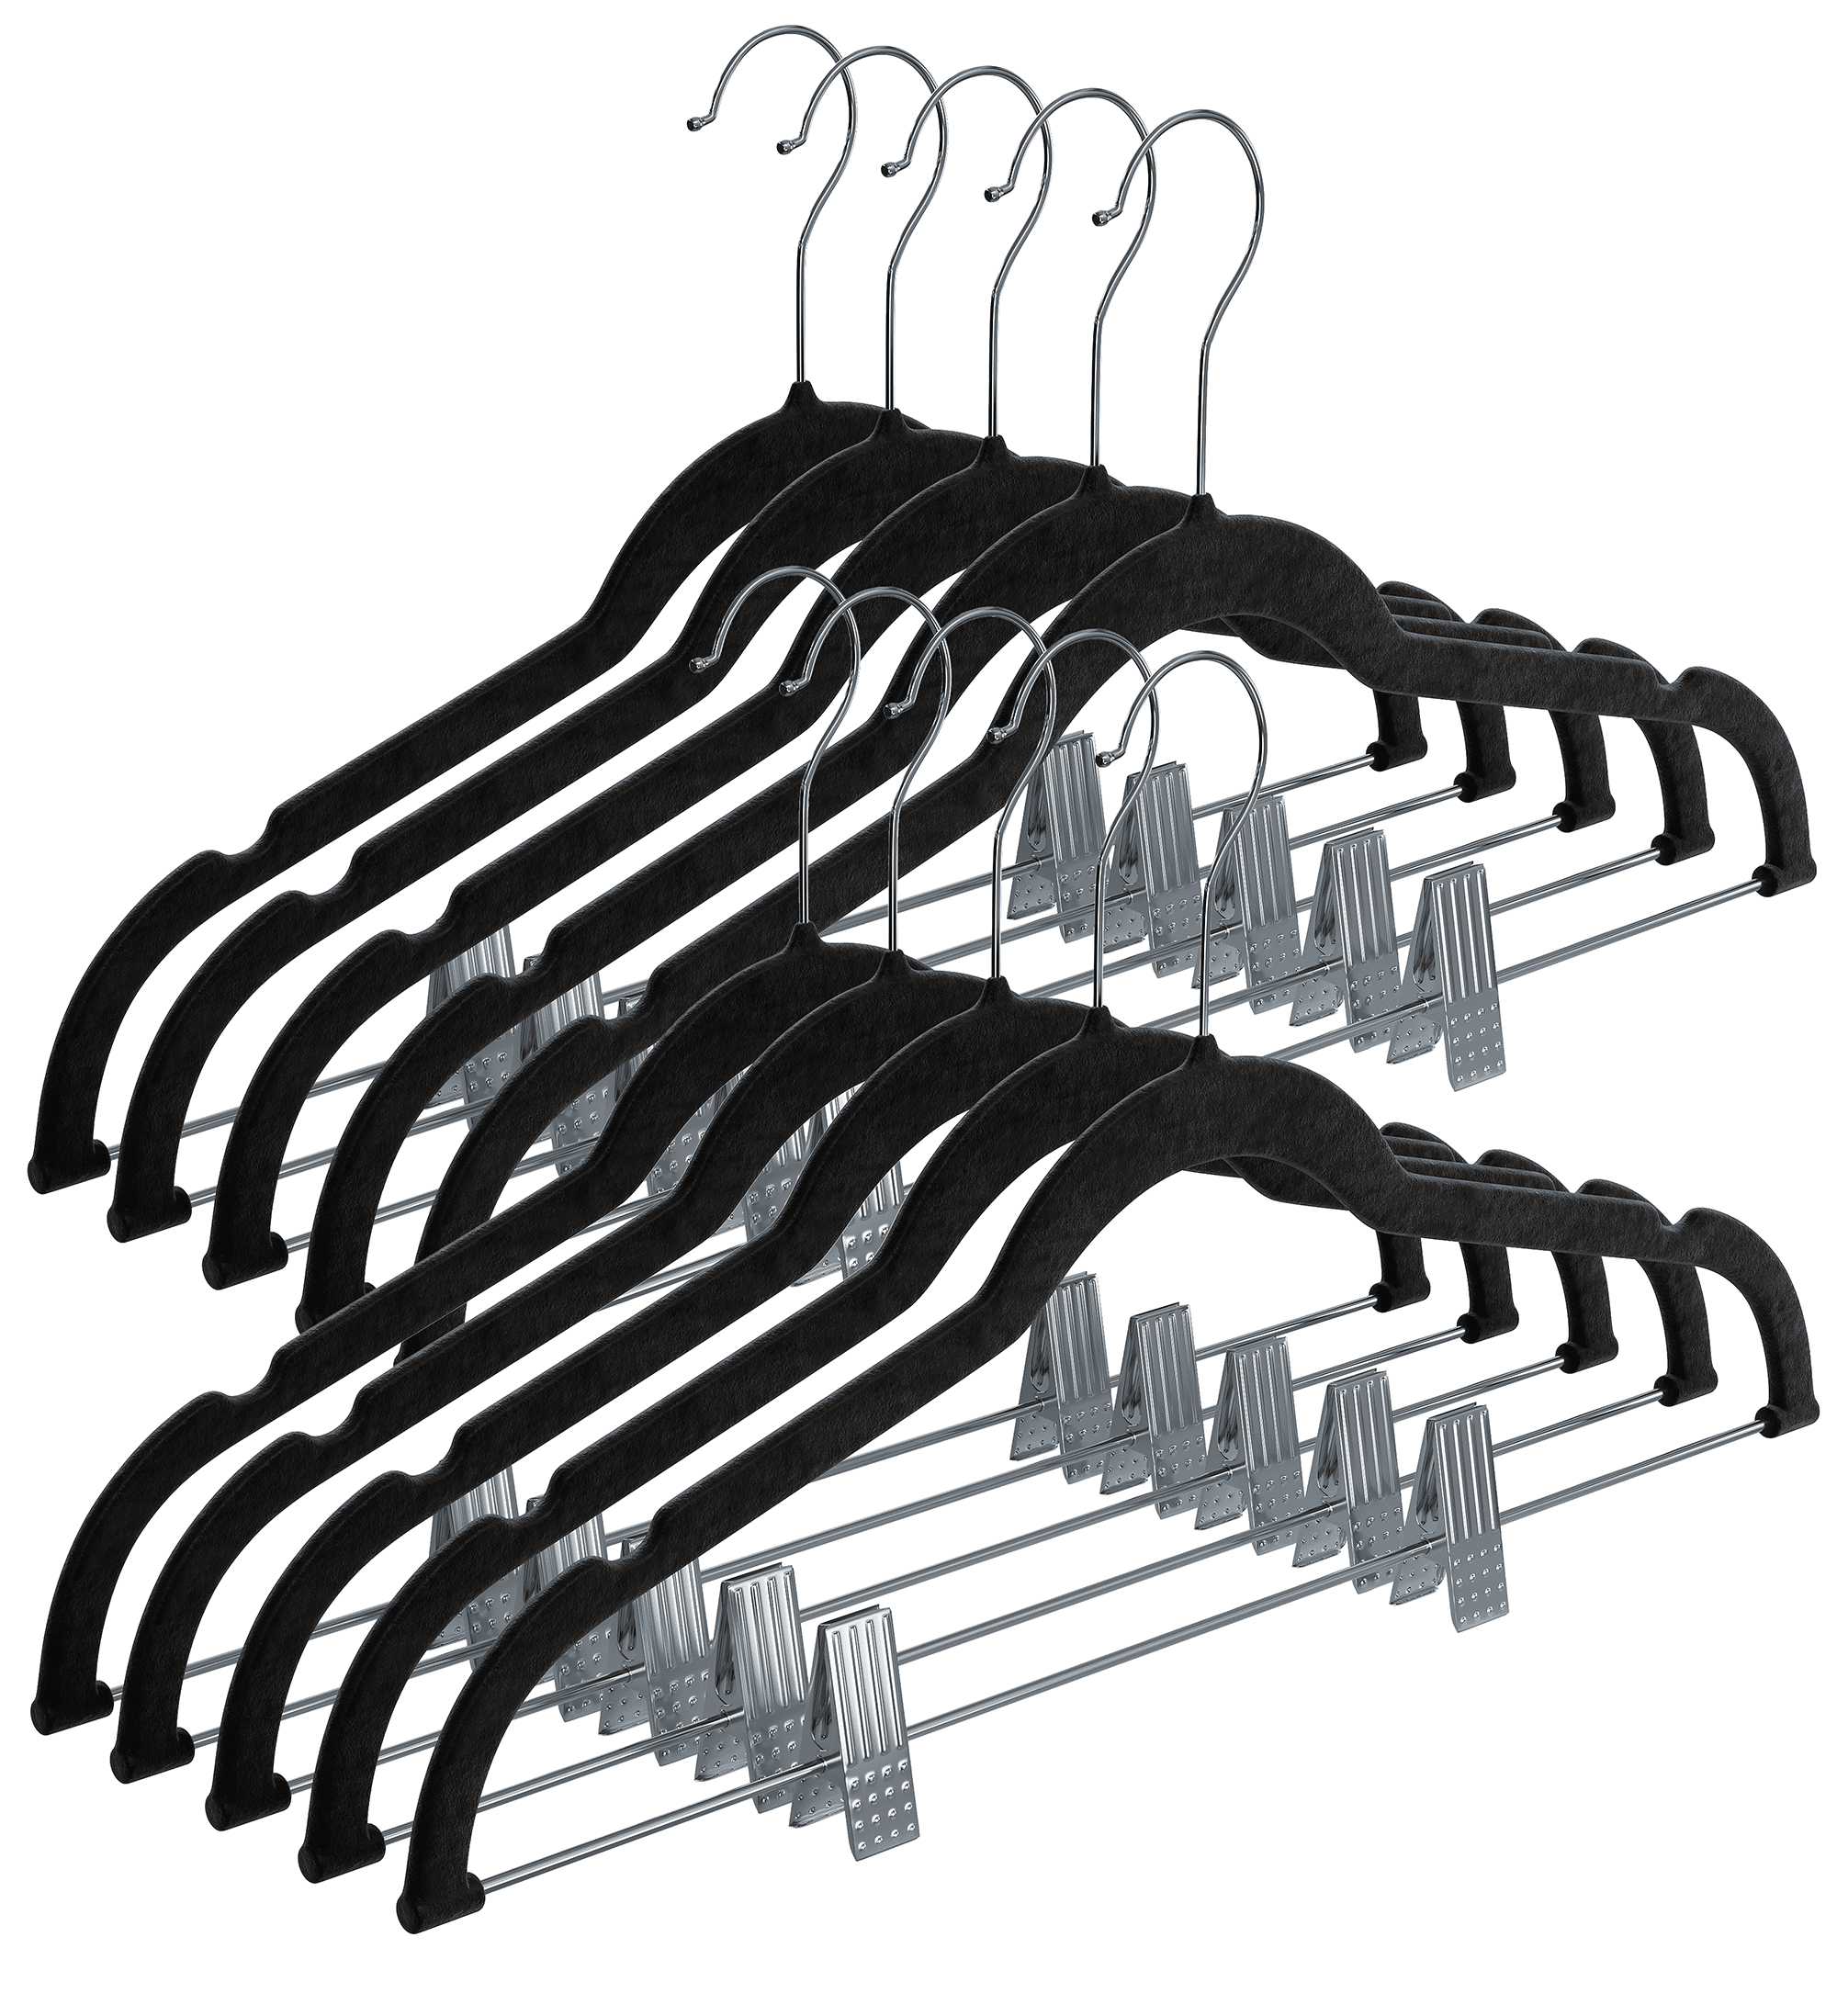 20/10Pack White Standard Velvet Hangers Durable Tubular Shirt Hanger Ideal  For LaundrySlim Space Saving For Coats Pants Dress